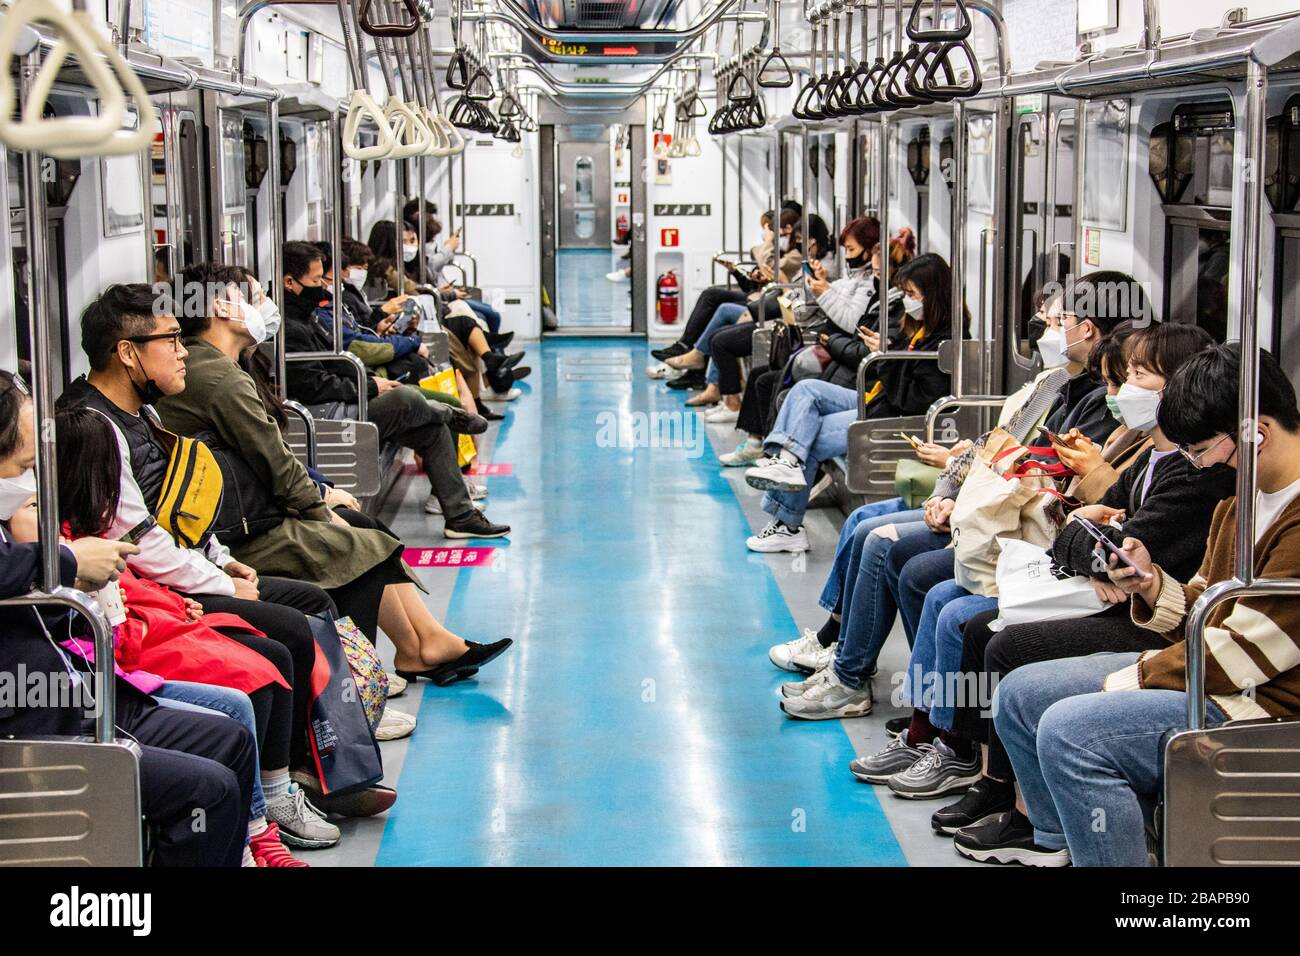 La mayoría de los pasajeros que usan máscaras protectoras durante la pandemia de Coronavirus, Seúl, Corea del Sur Foto de stock